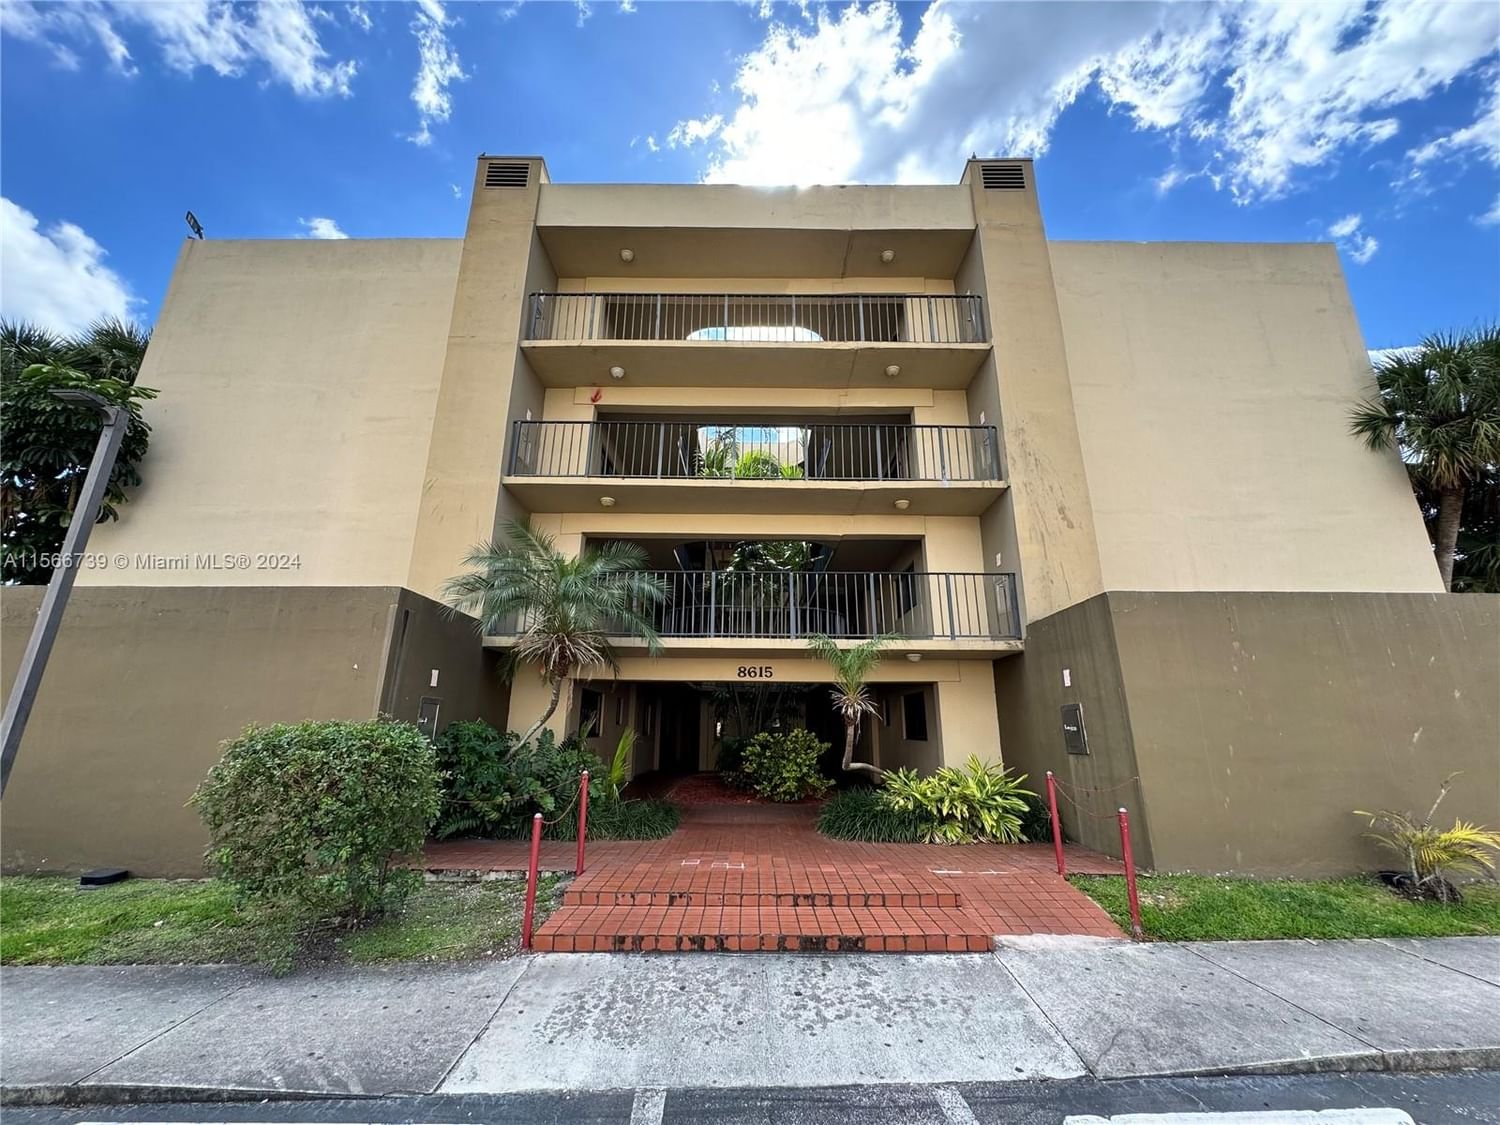 Real estate property located at 8615 8th St #210, Miami-Dade County, FOX CHASE CONDO #1, Miami, FL